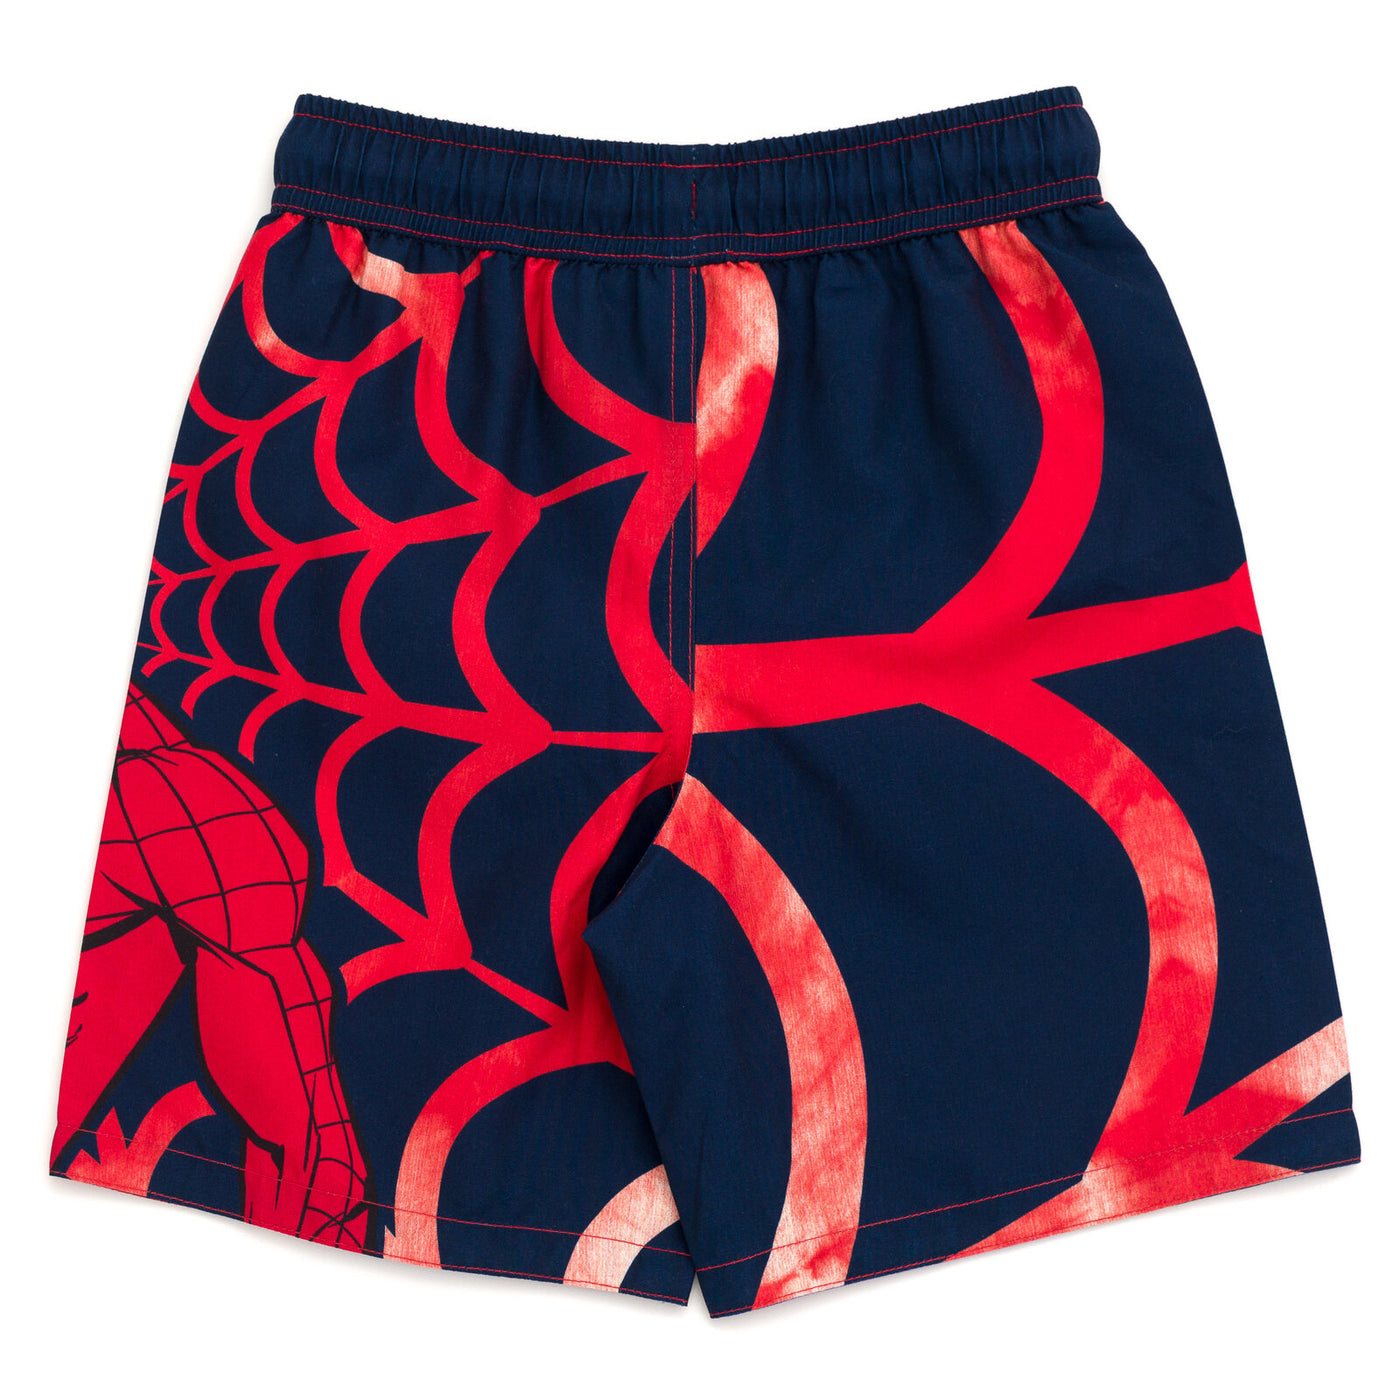 Marvel Spider-Man UPF 50+ Swim Trunks Bathing Suit